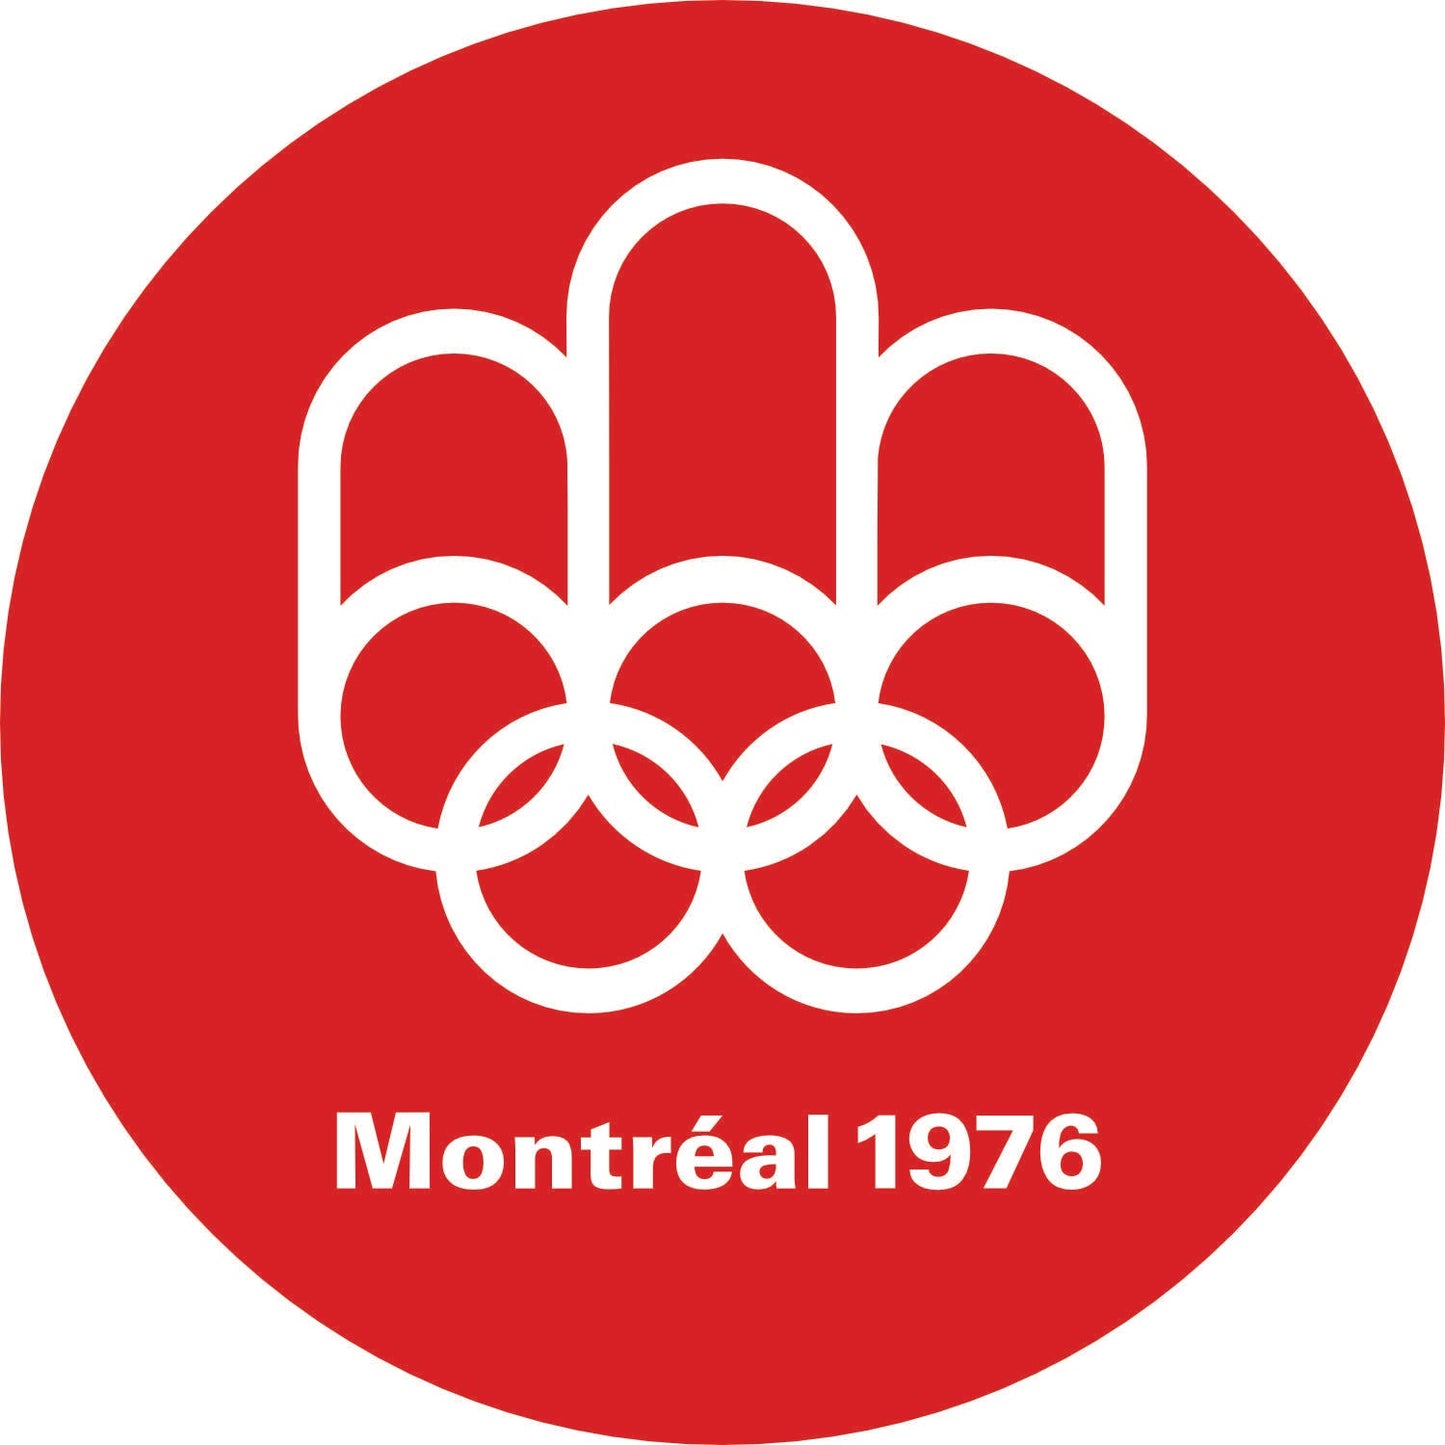 152-Single-sided illuminated sign - Montréal 1976